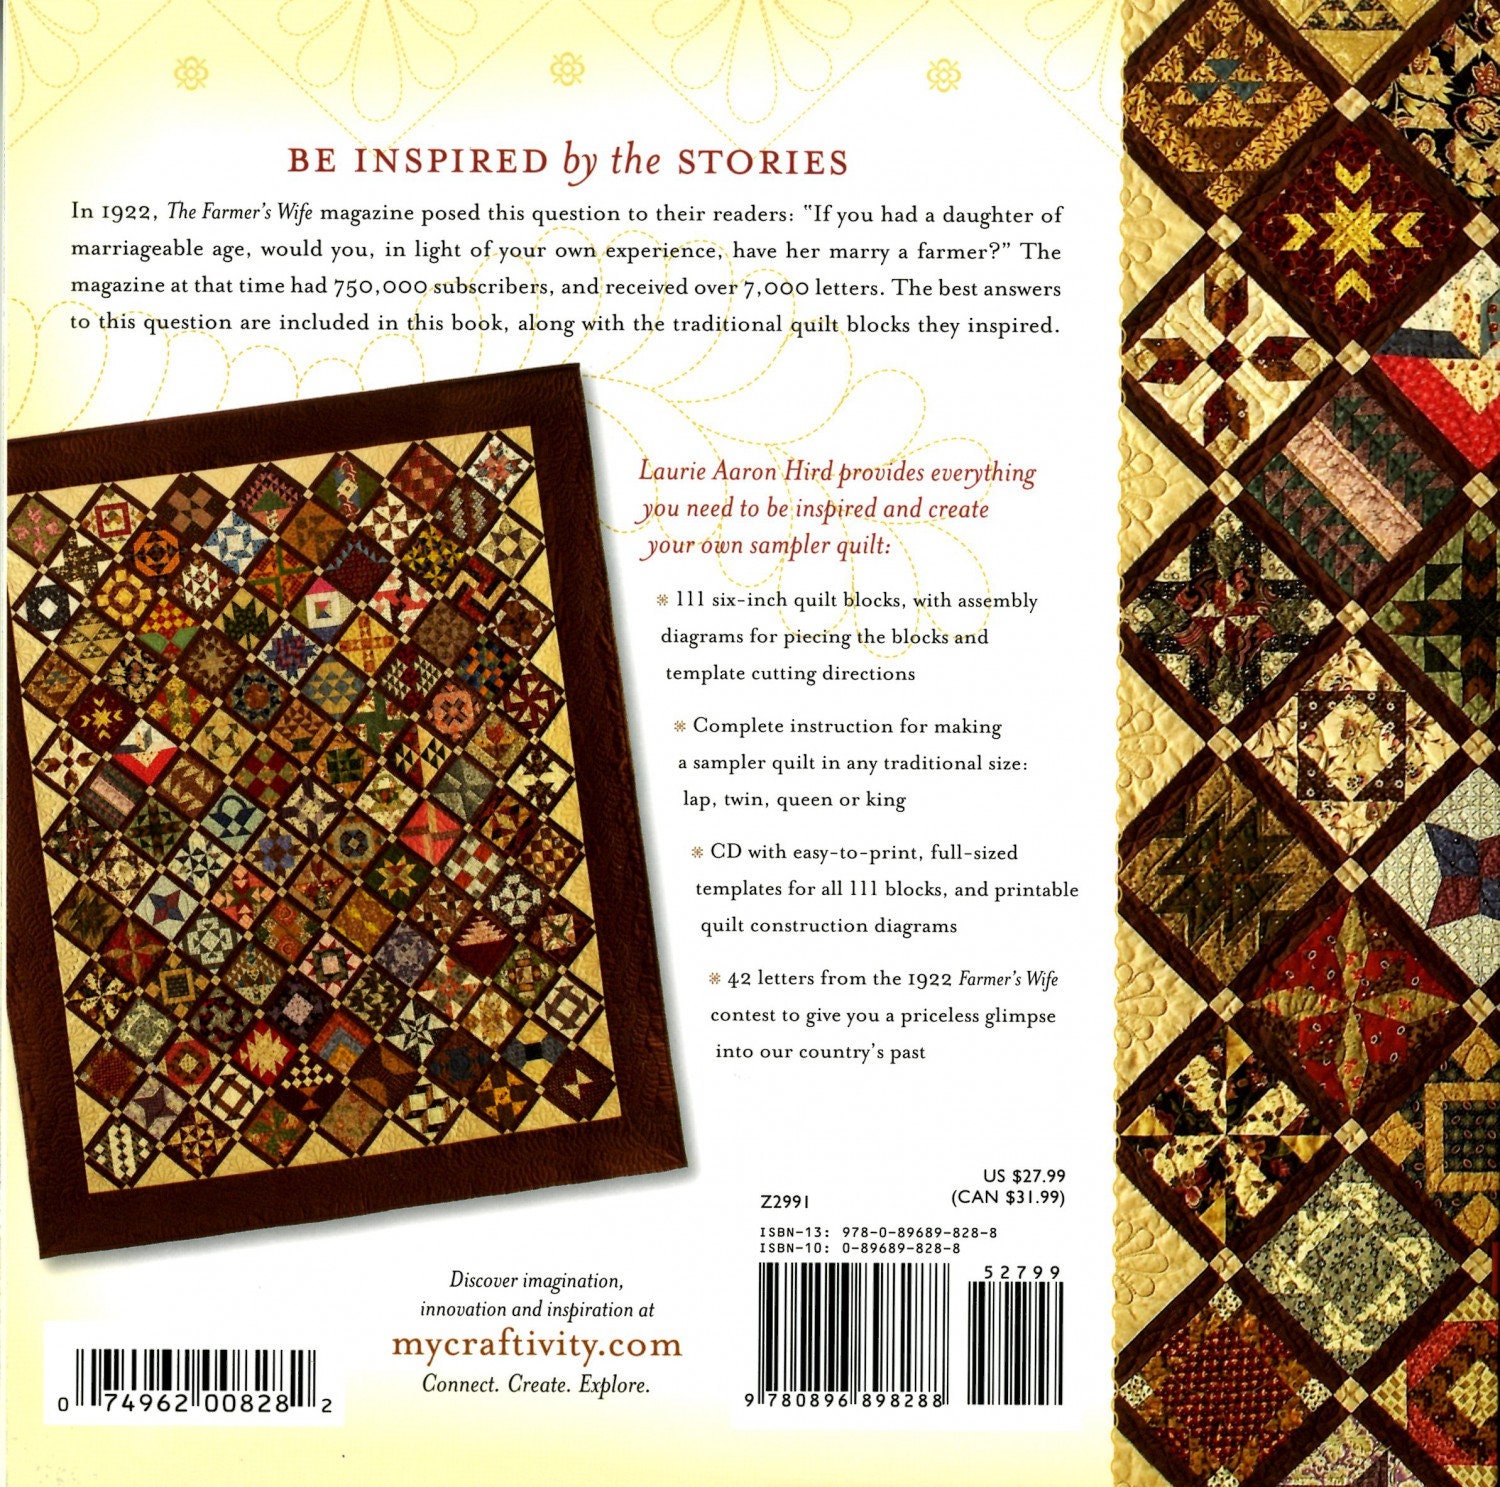 August Sampler Patchwork Quilt Pattern by Elizabeth Hartman 